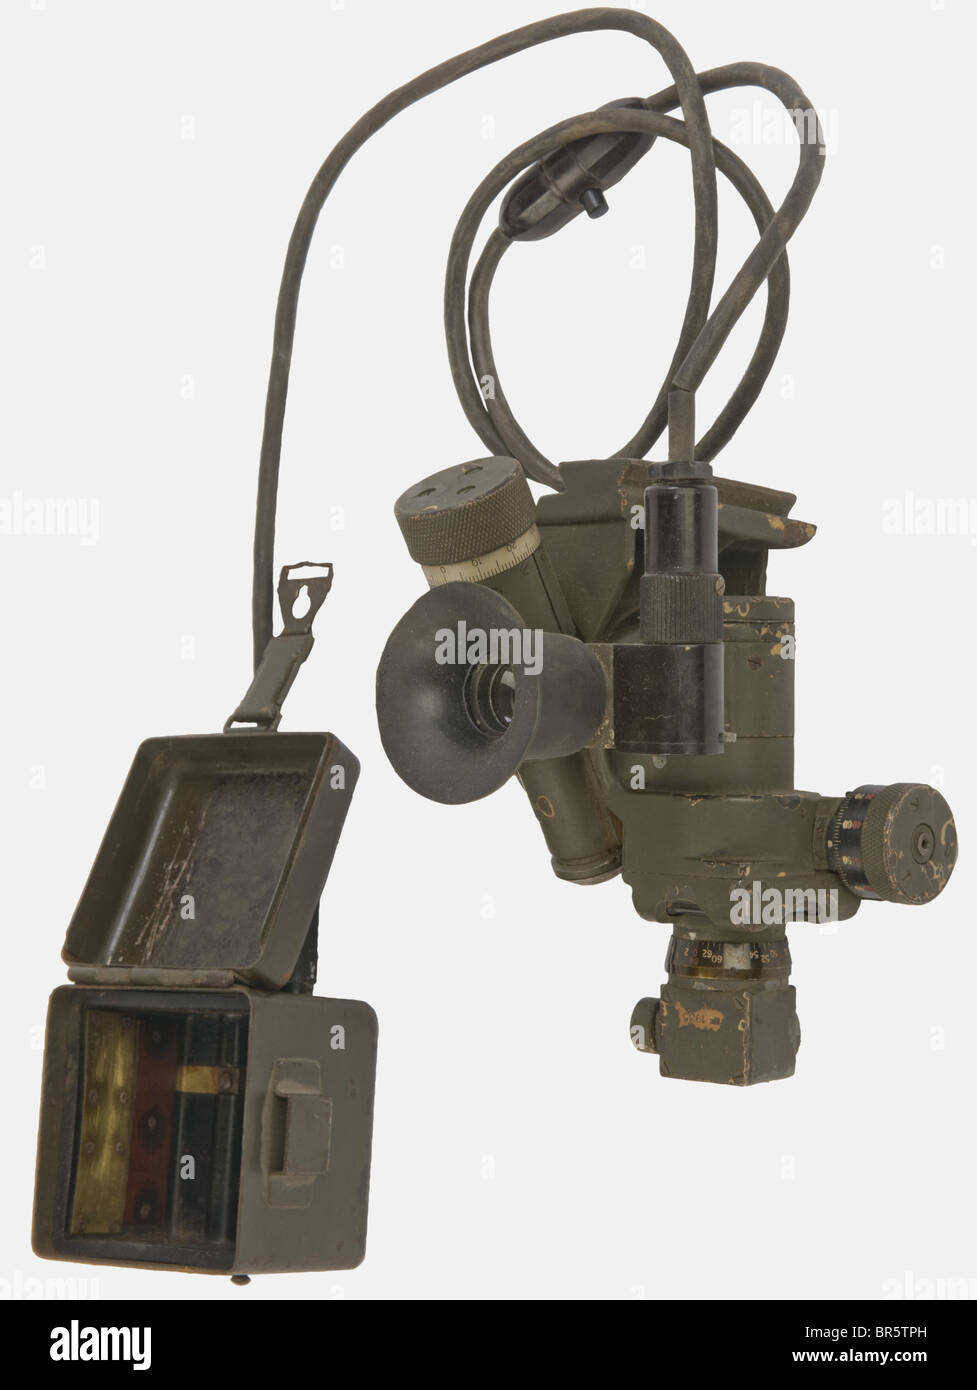 Un dispositivo ottico MG 34/42, datato 1935, le lenti da pulire.  Aggiungiamo un contenitore per batteria ottica e un cavo elettrico gommato  nero con spina e pulsante a due poli, marchio del